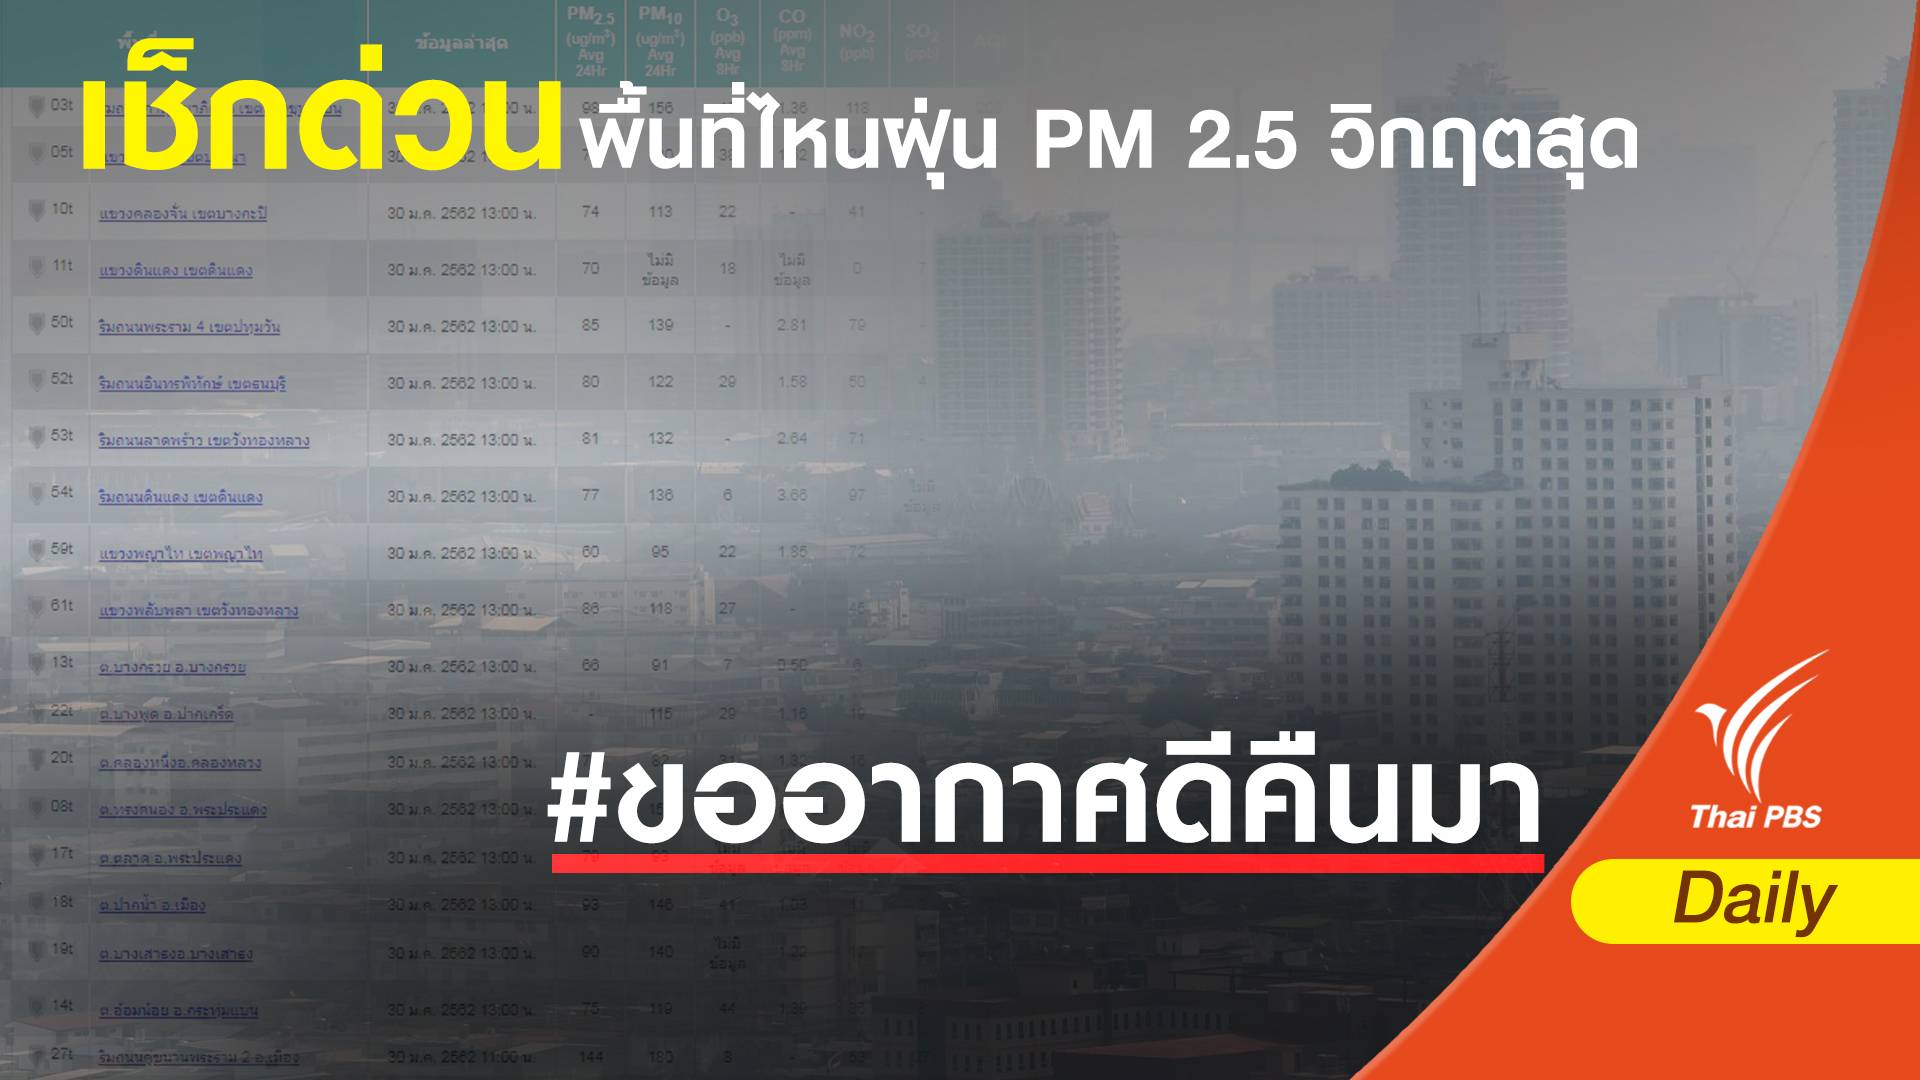 ฝุ่น PM 2.5 : เช็กด่วนพื้นที่ไหนวิกฤตสุด